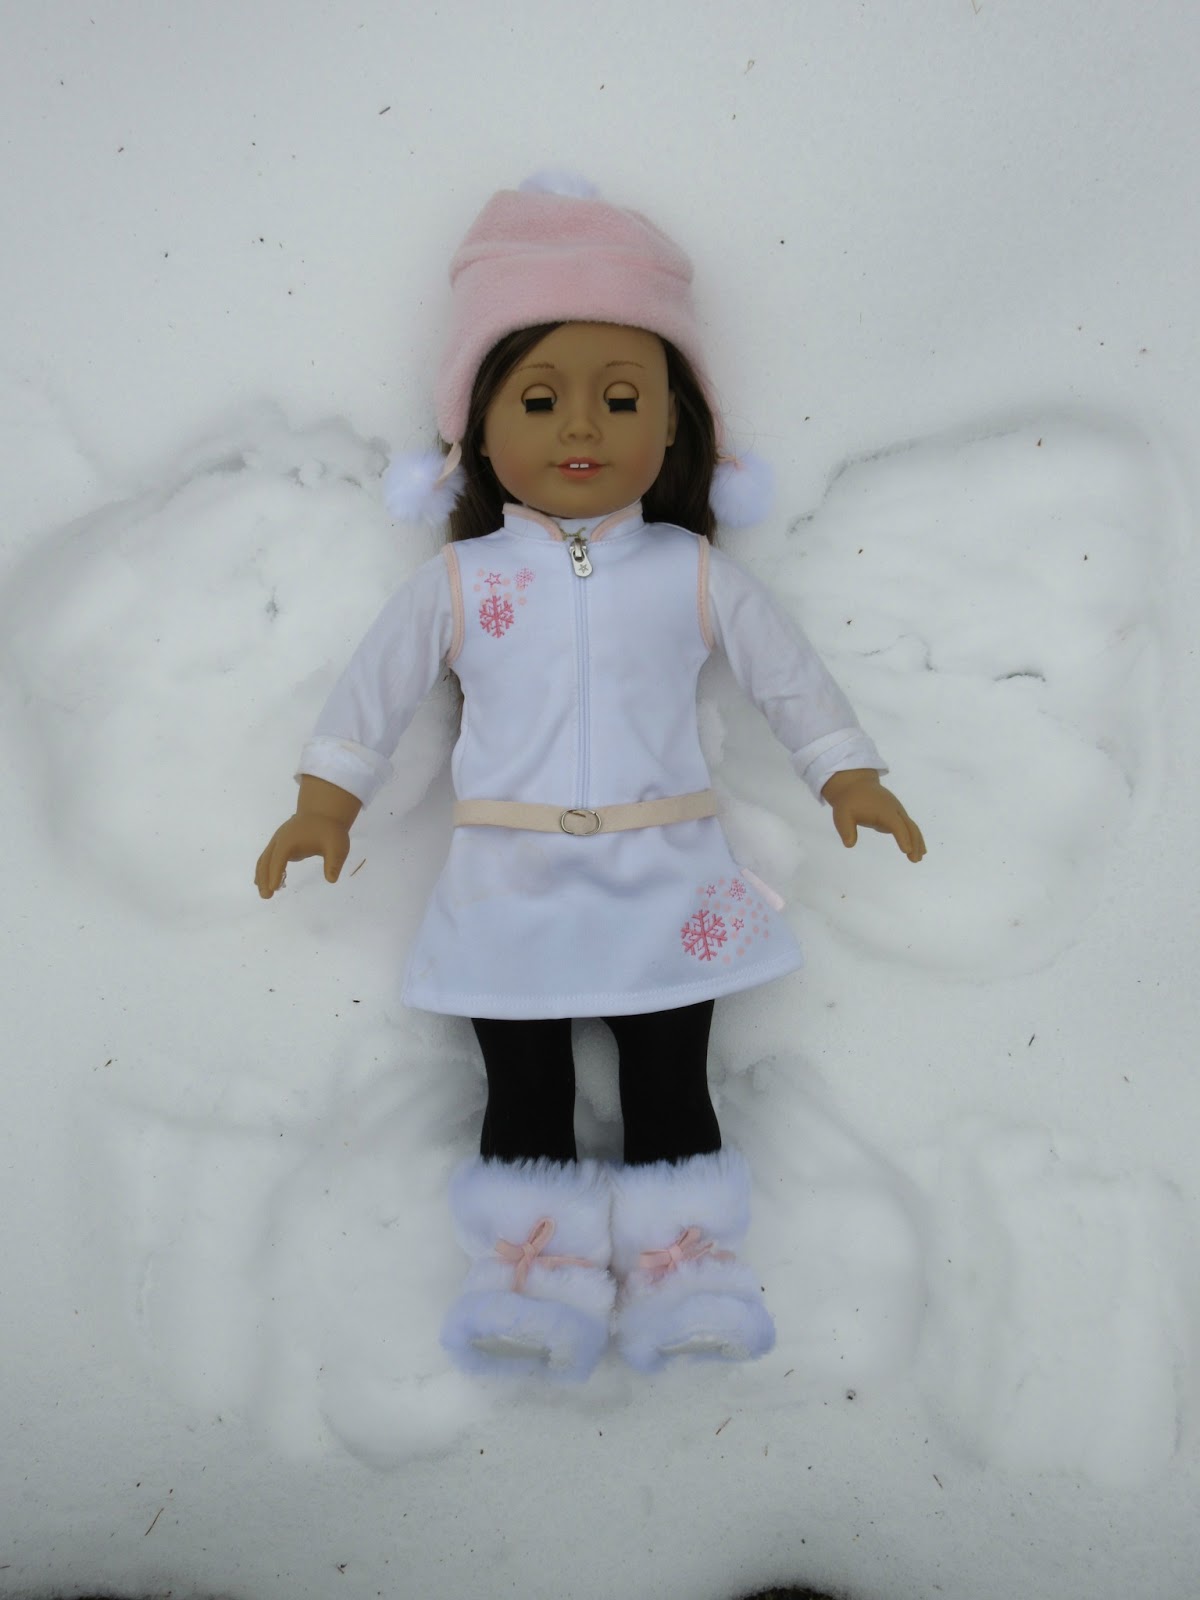 American girl snow angels.jpg